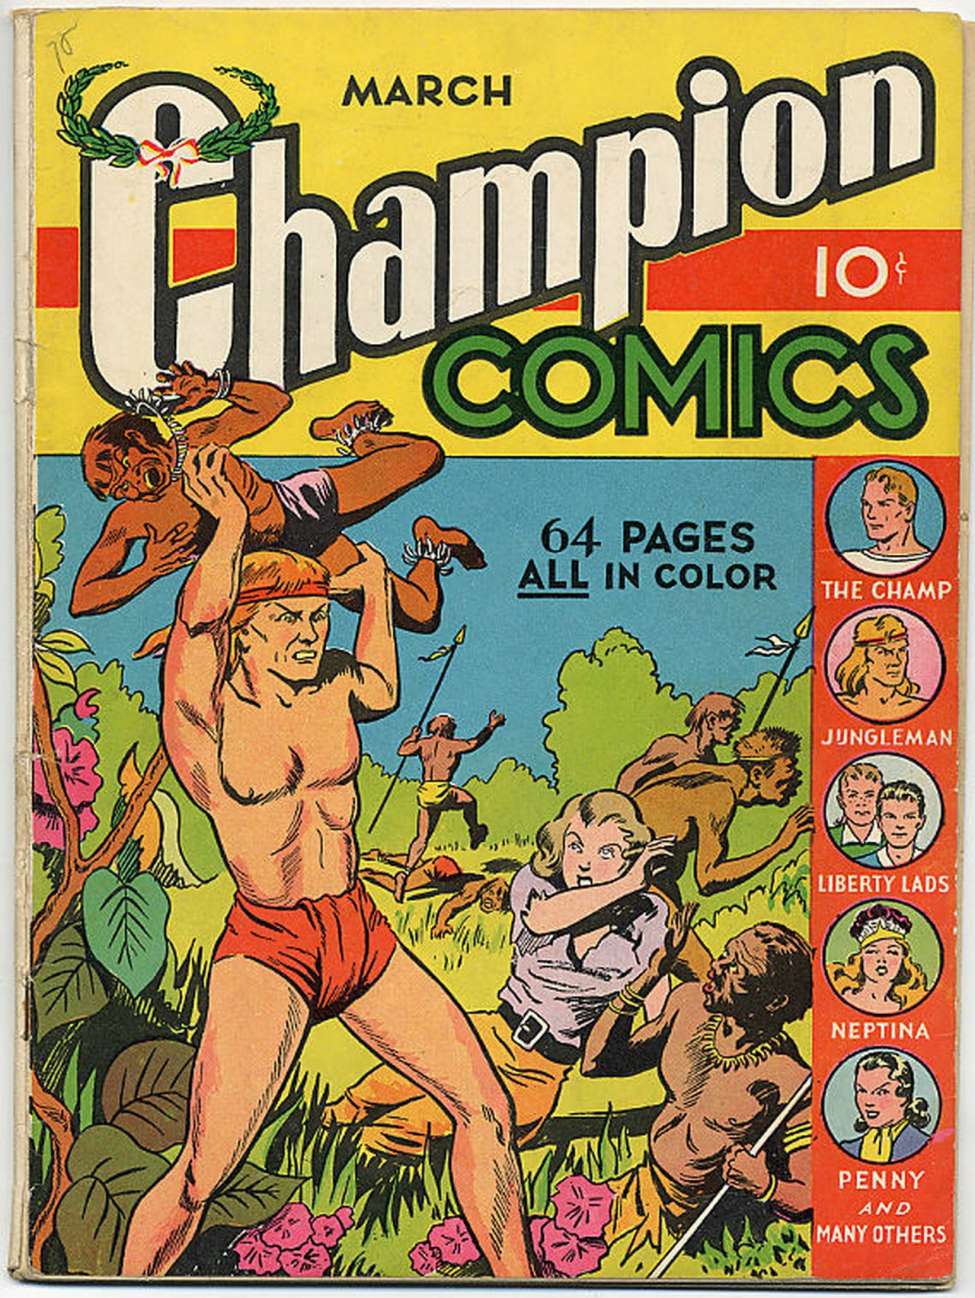 Book Cover For Champion Comics 5 (2 fiche)